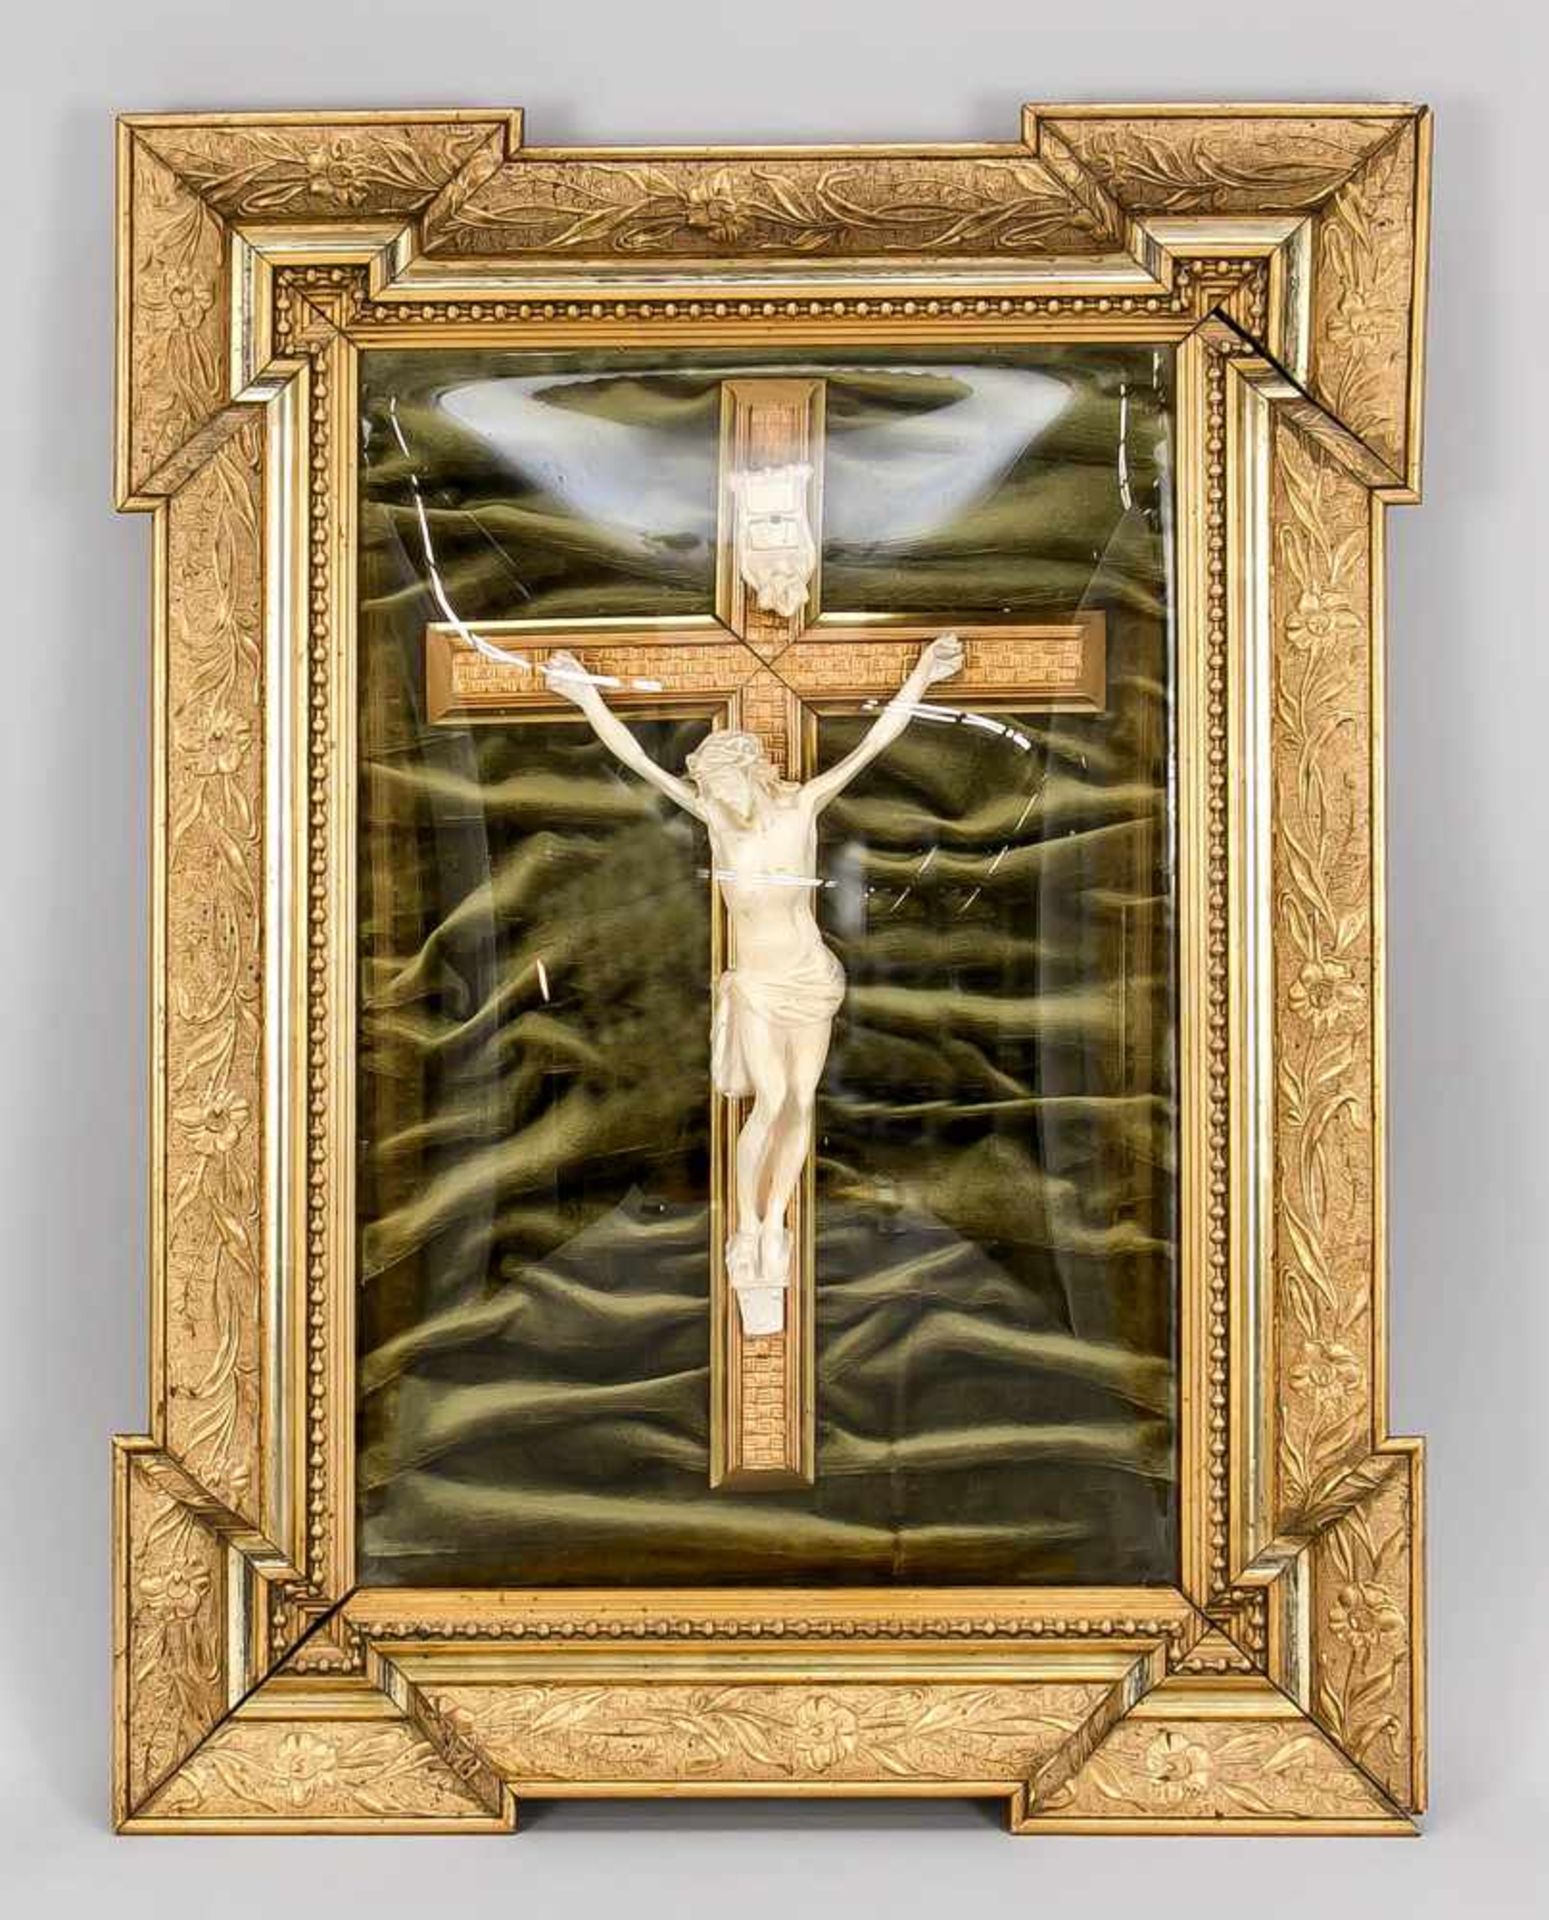 Andachtsbild, um 1900. Jesus am Kreuz (Gips?) vor dunkelgrünem, gerafften Samt. Konvex